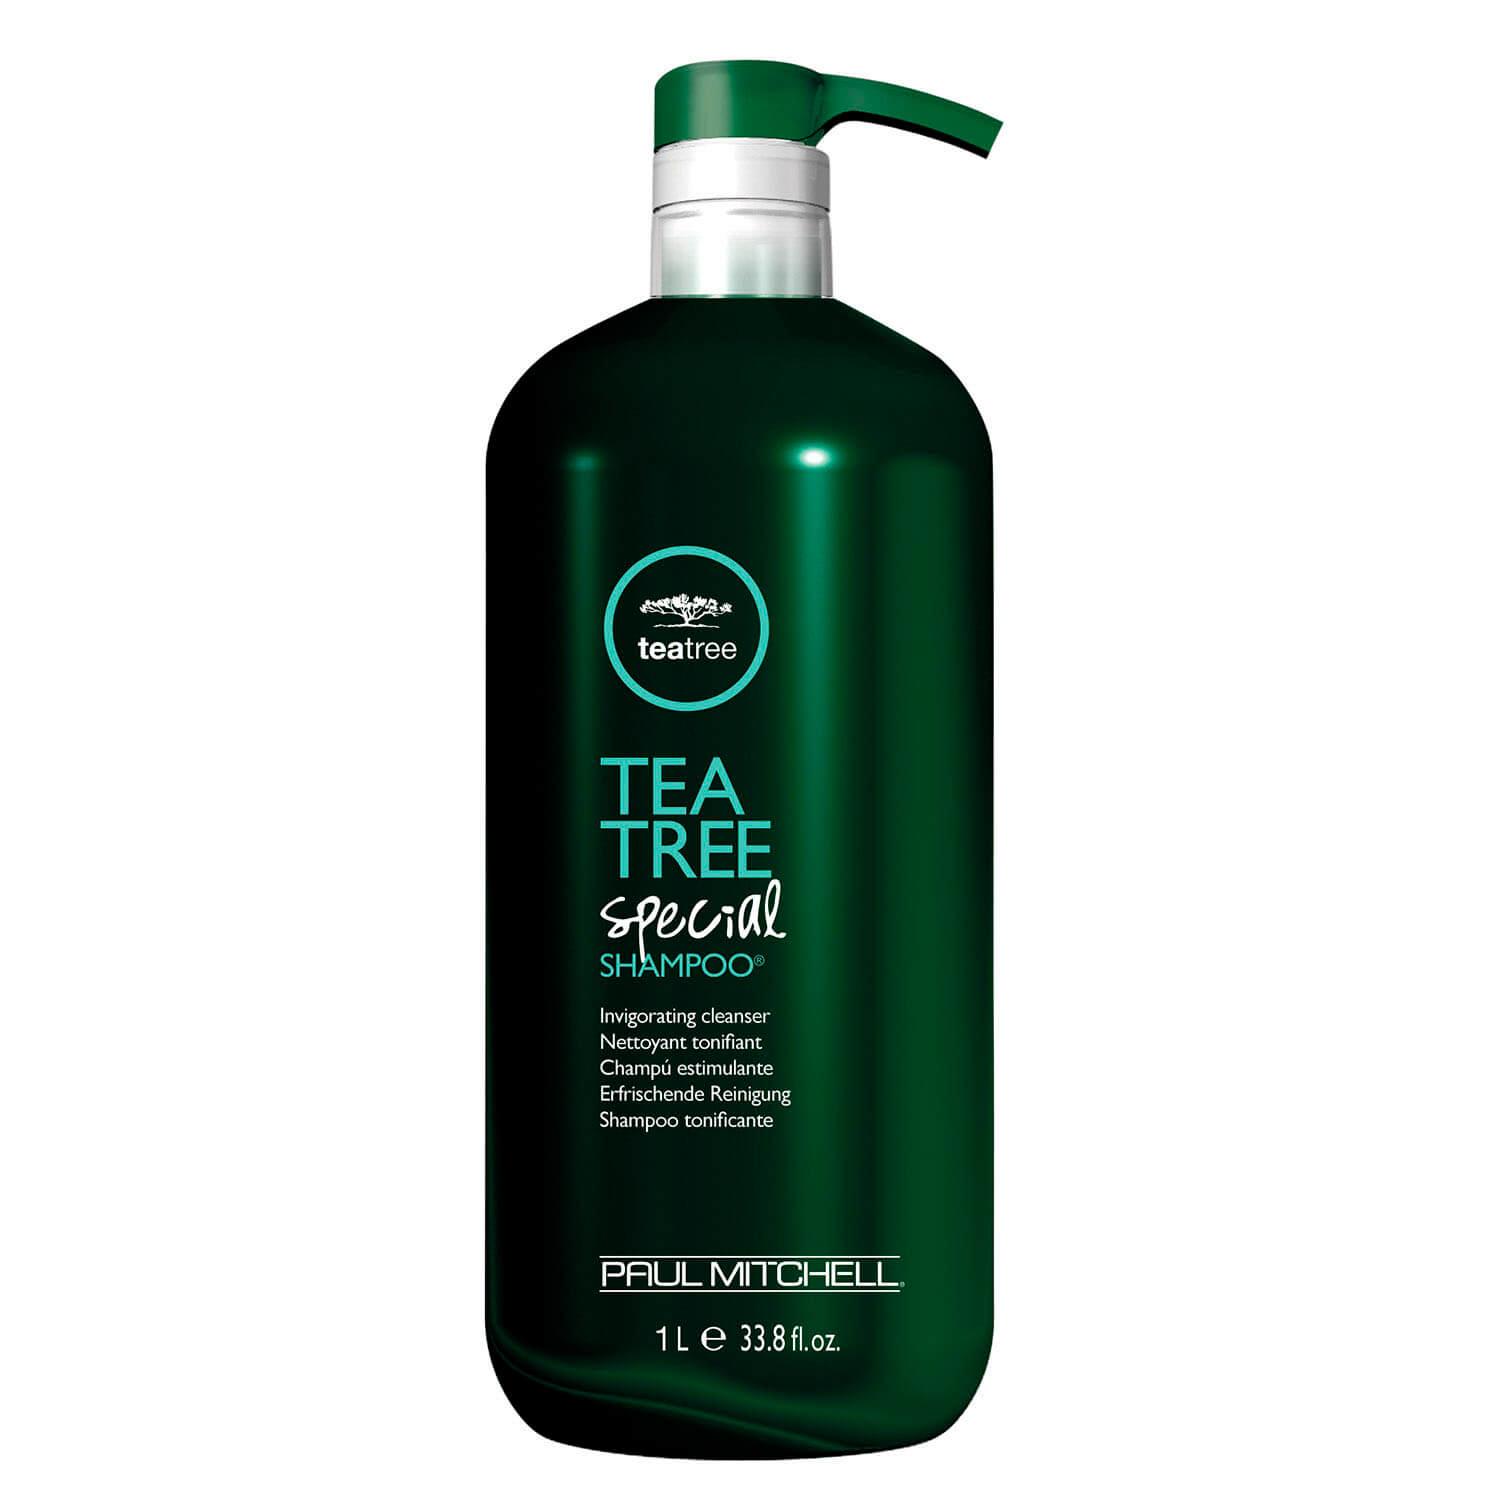 Tea Tree Special - Shampoo